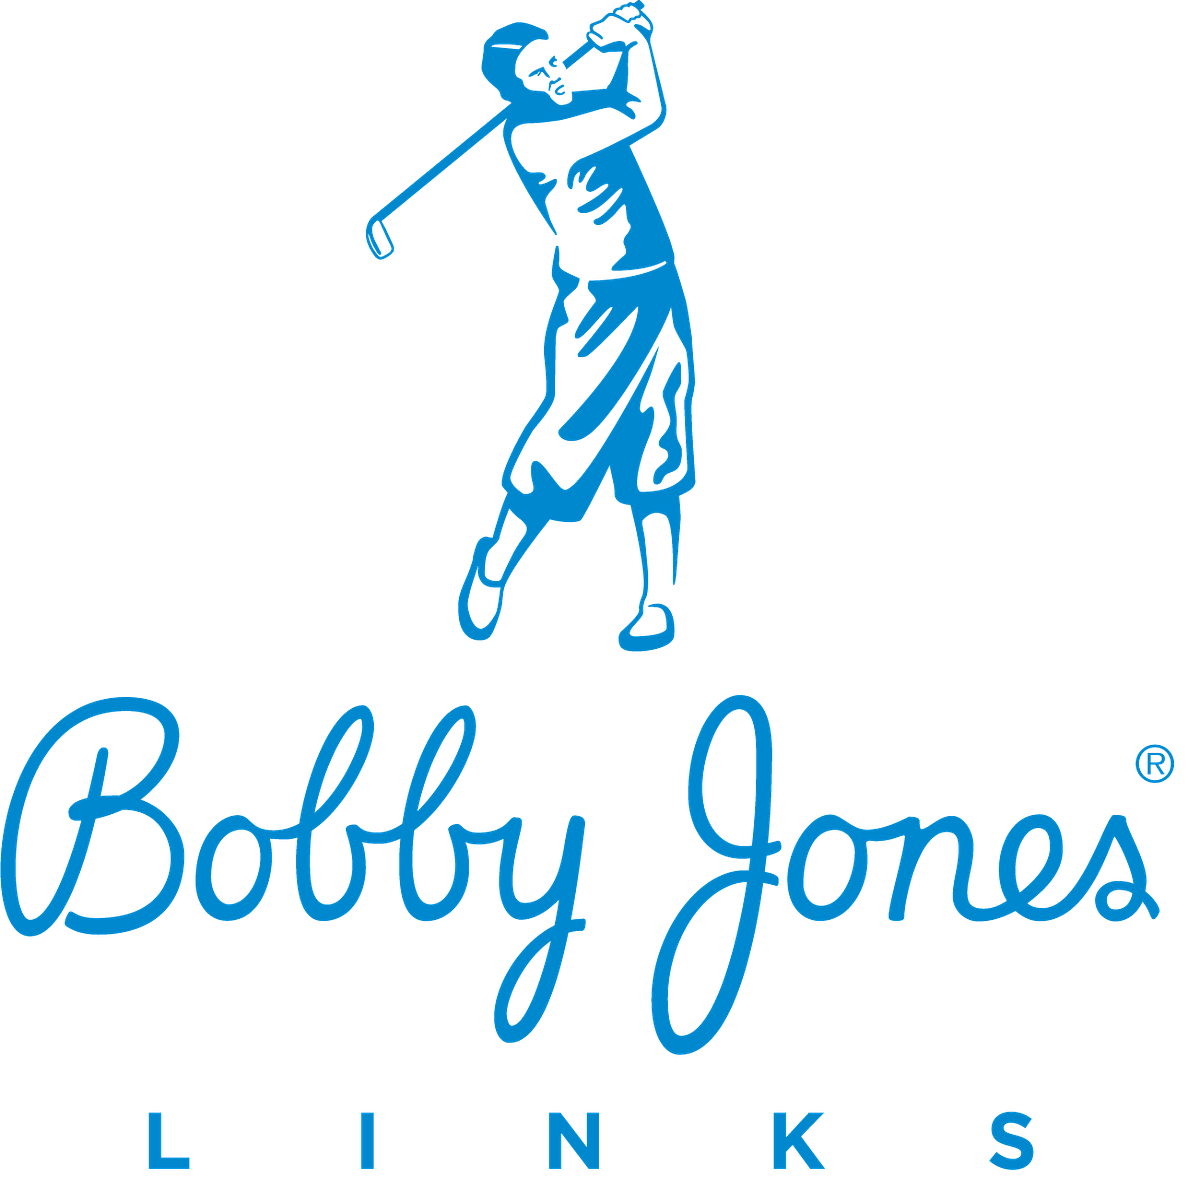 Bobby Jones Links